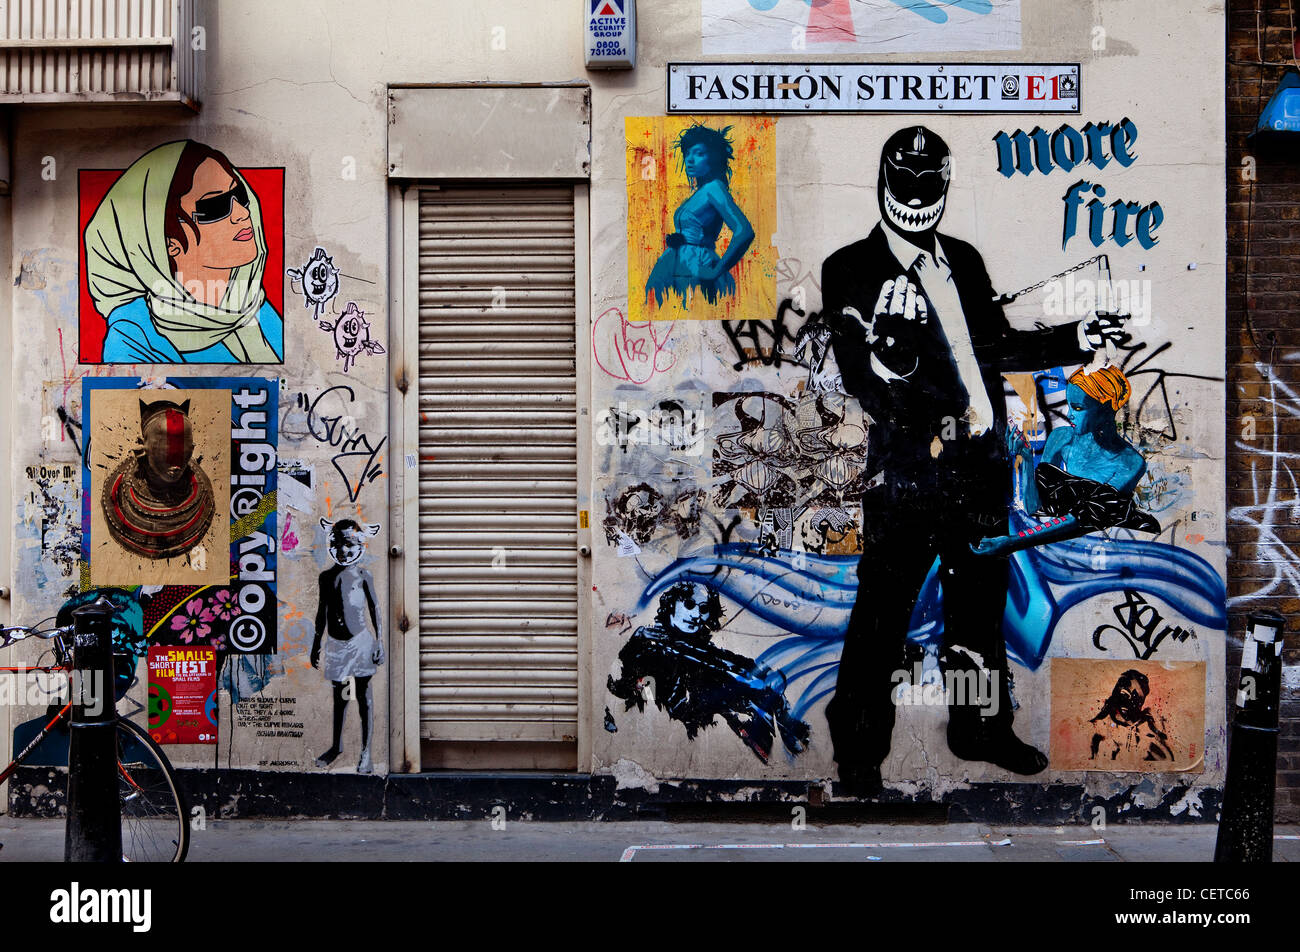 Graffiti sur Fashion Street à Londres, dans le quartier branché de East End. Banque D'Images